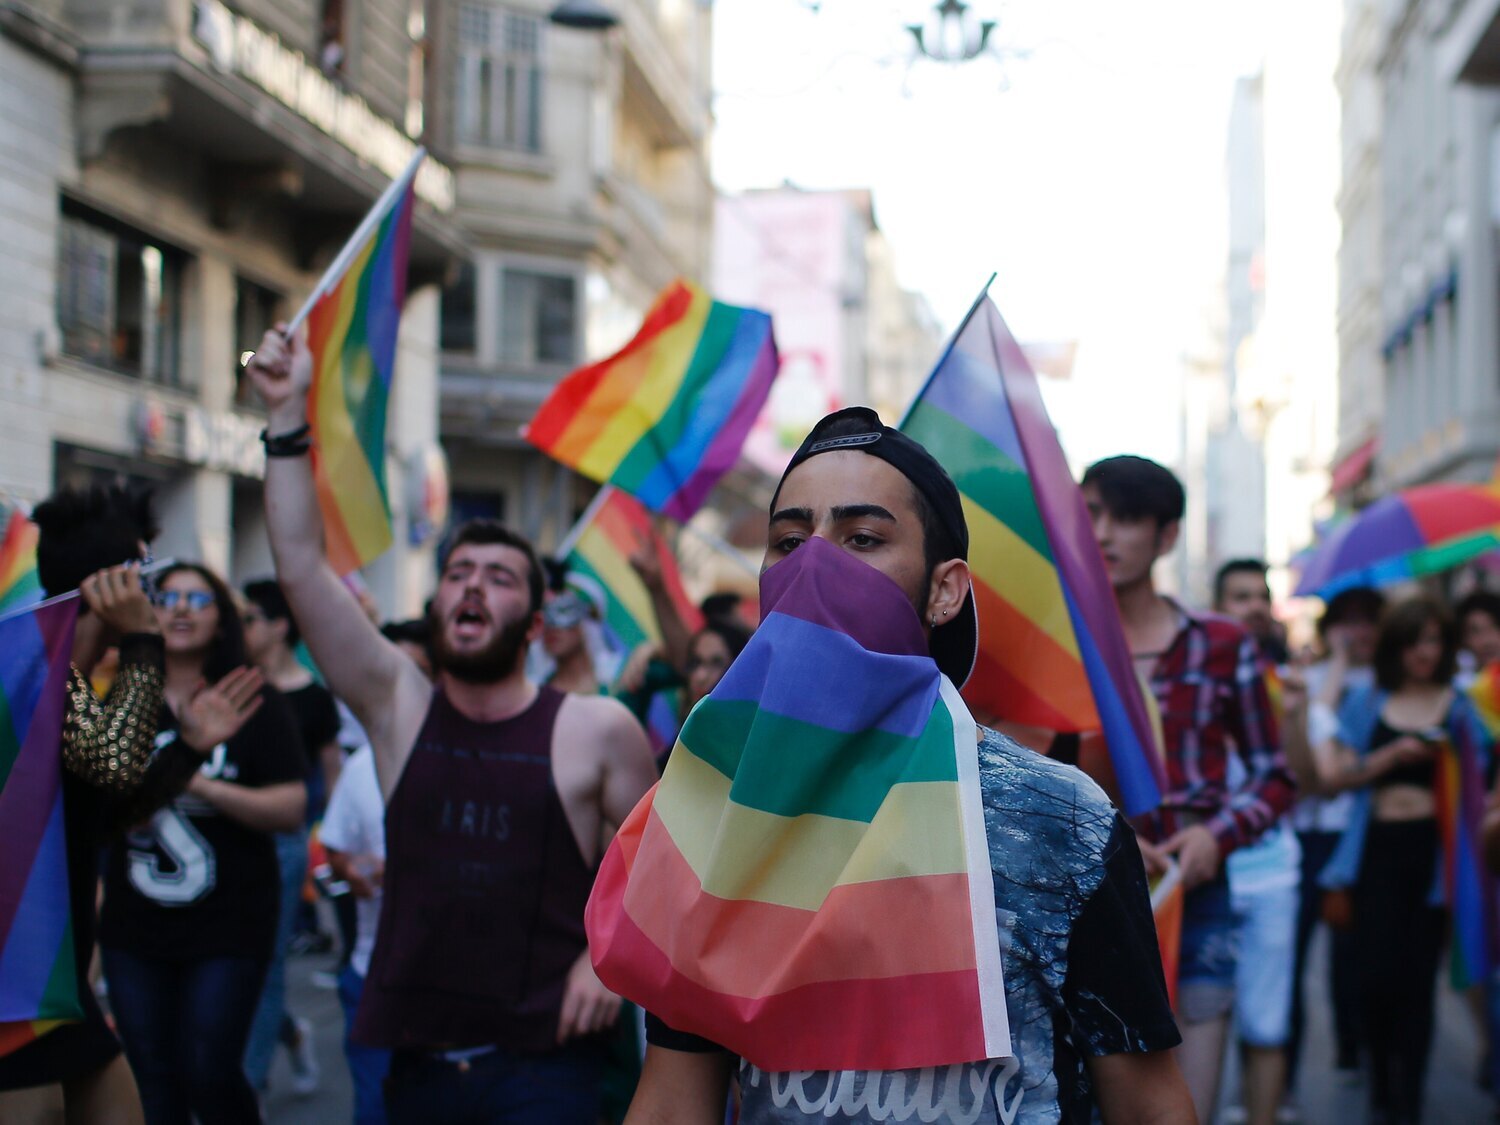 Gas lacrimógeno, balas de plástico y detenciones: Turquía reprime el Orgullo LGTBI